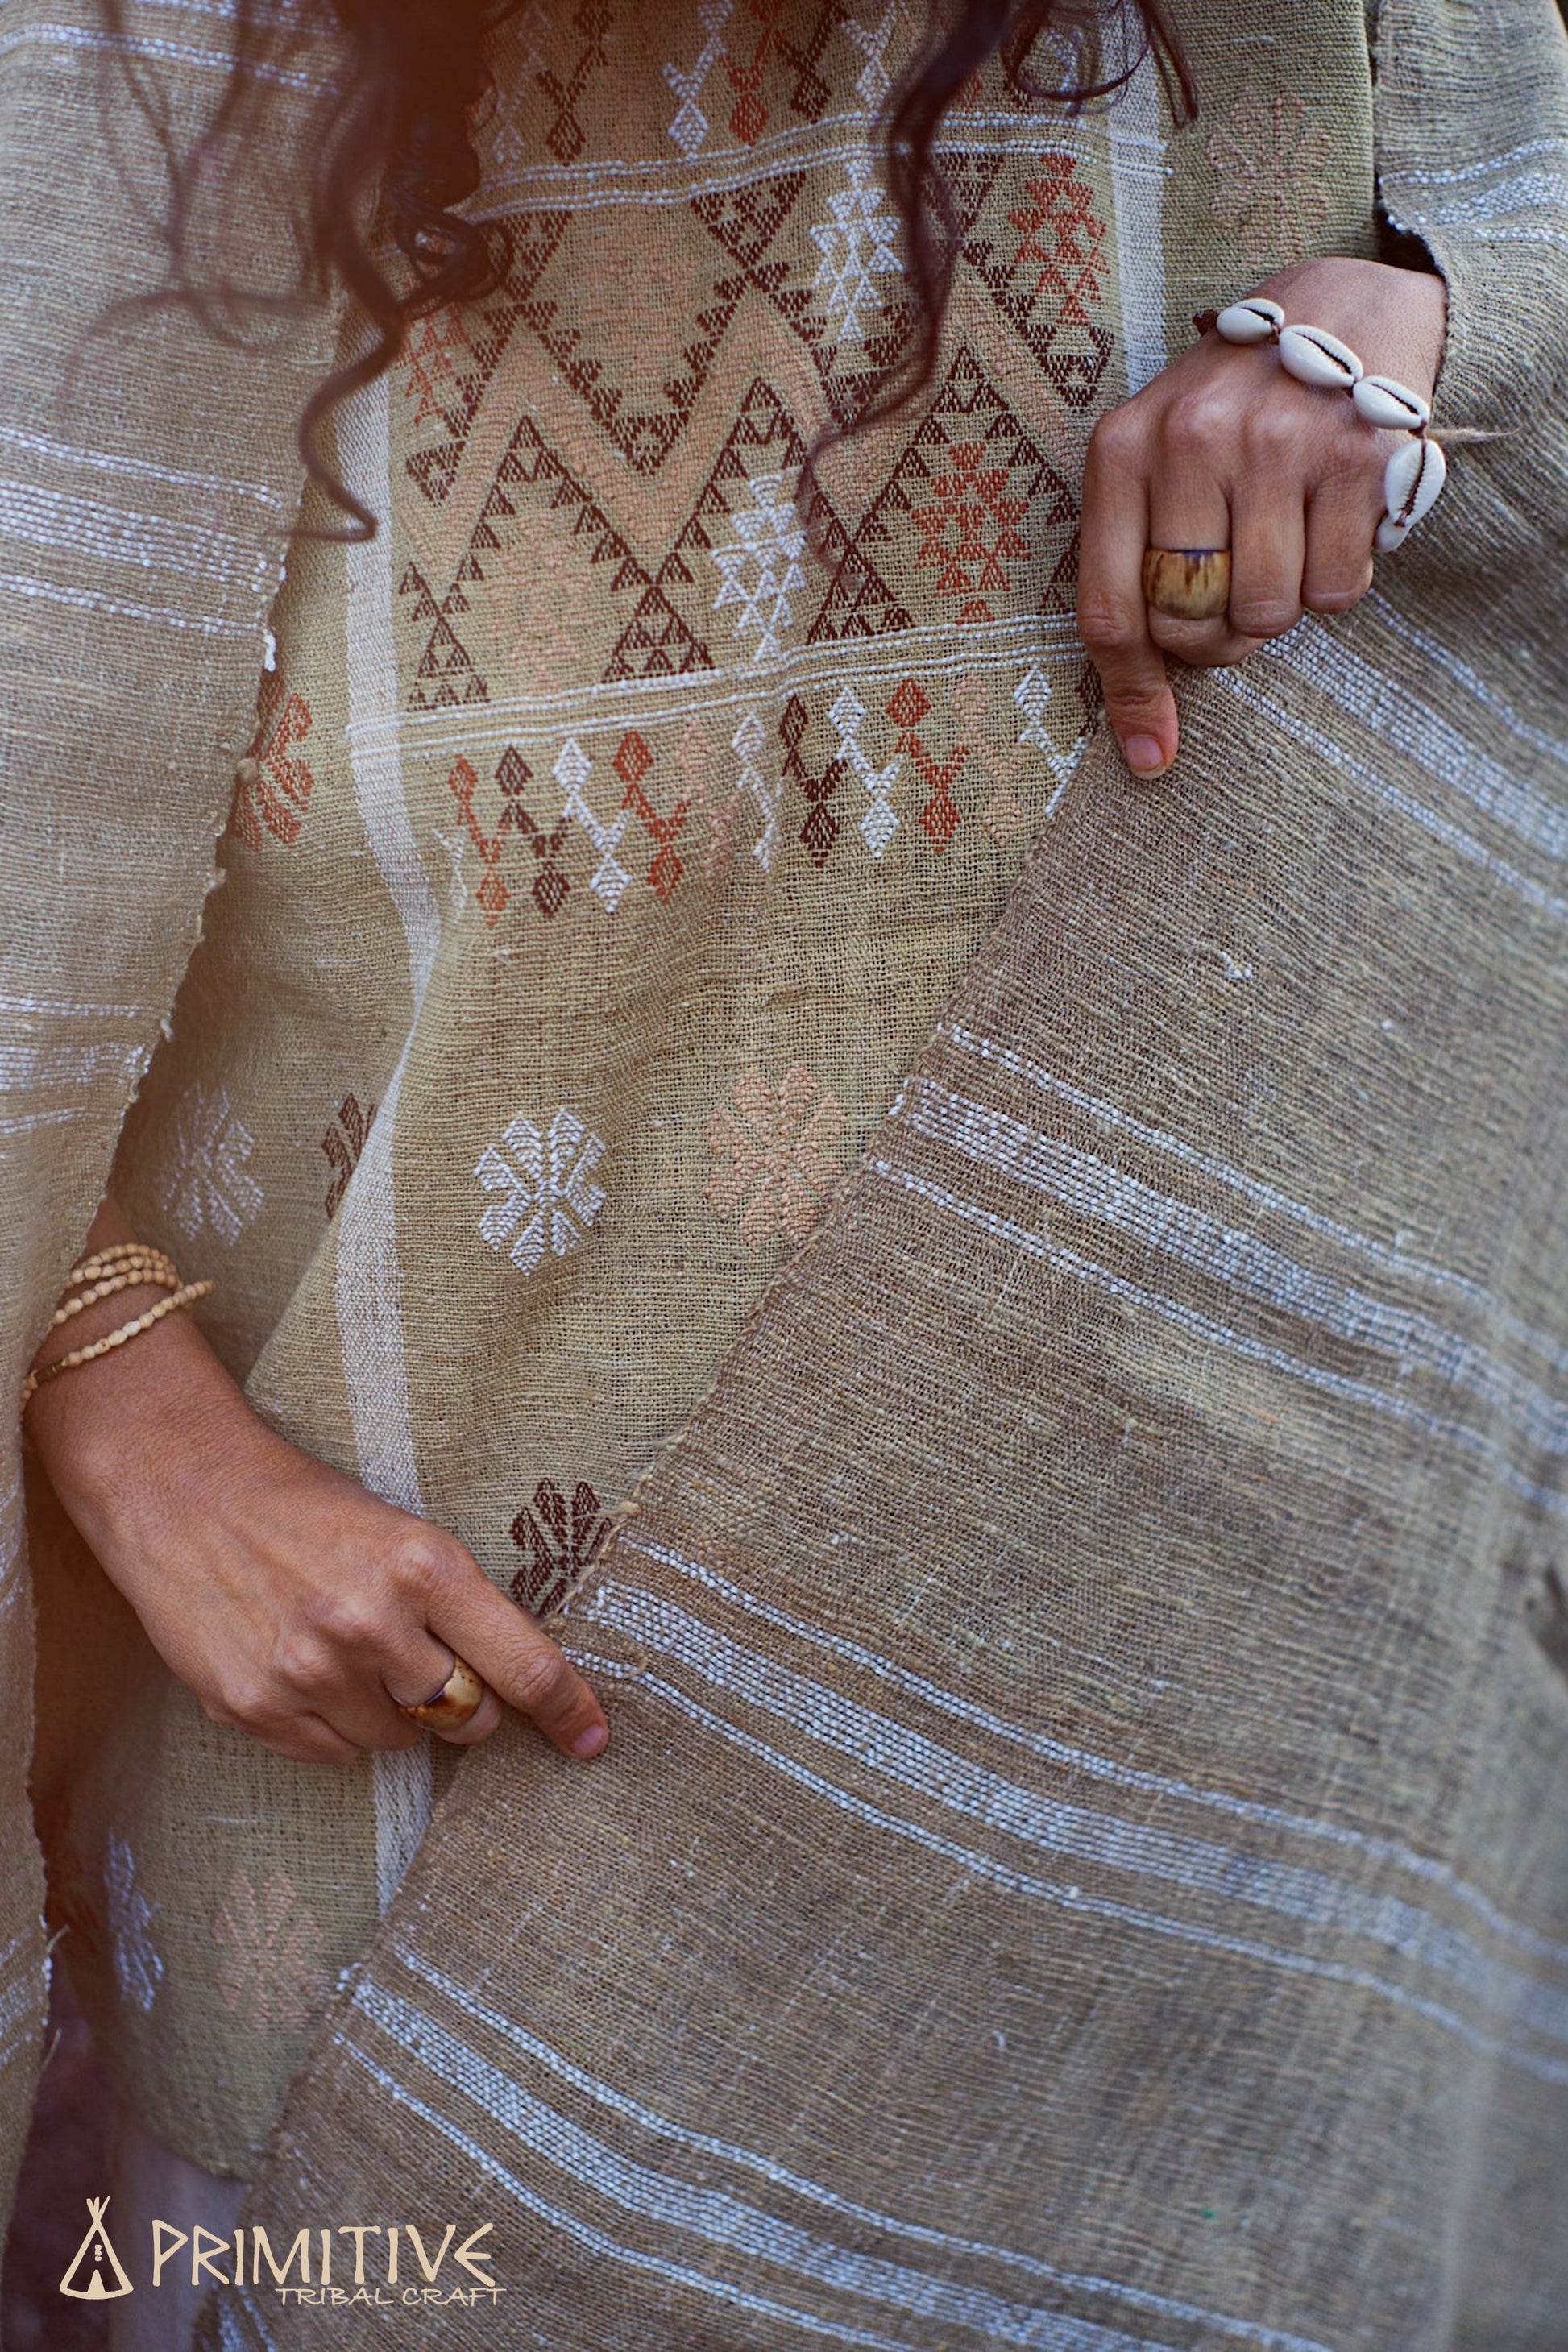 Wild Green Cotton Handspun Handloom Shawl with Patterns